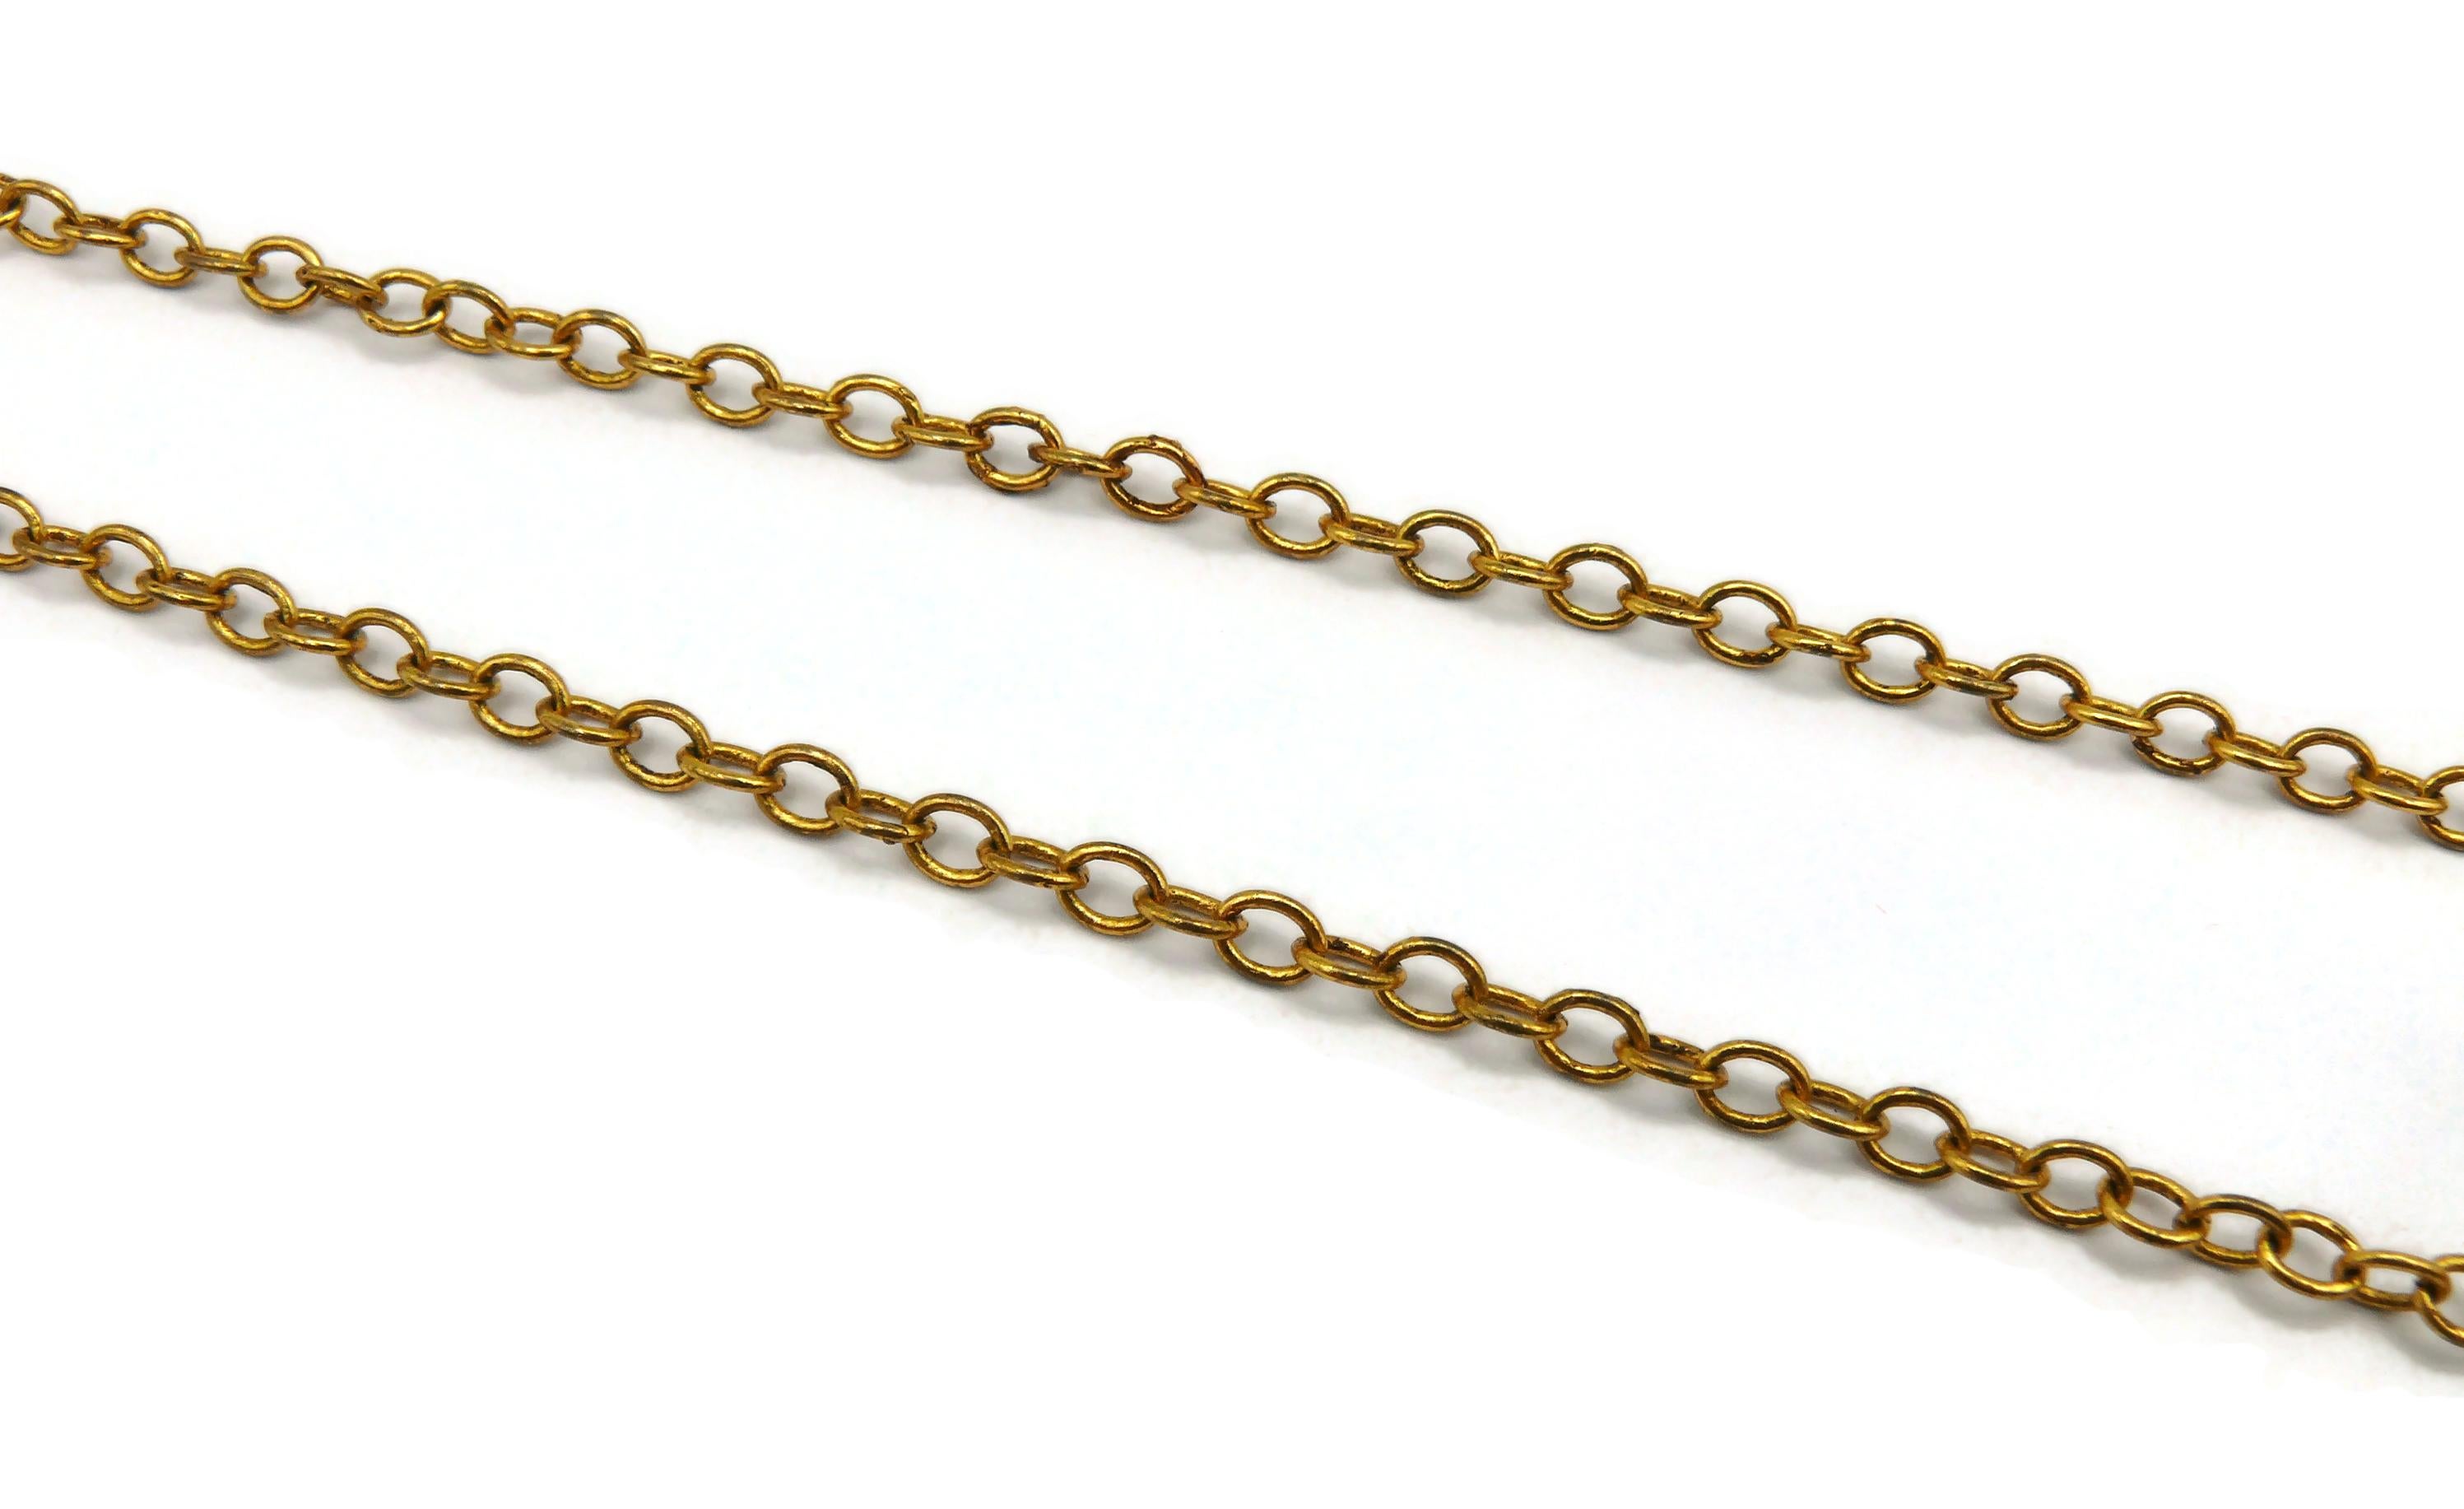 CHRISTIAN LACROIX Vintage Jewelled Pendant Necklace For Sale 4